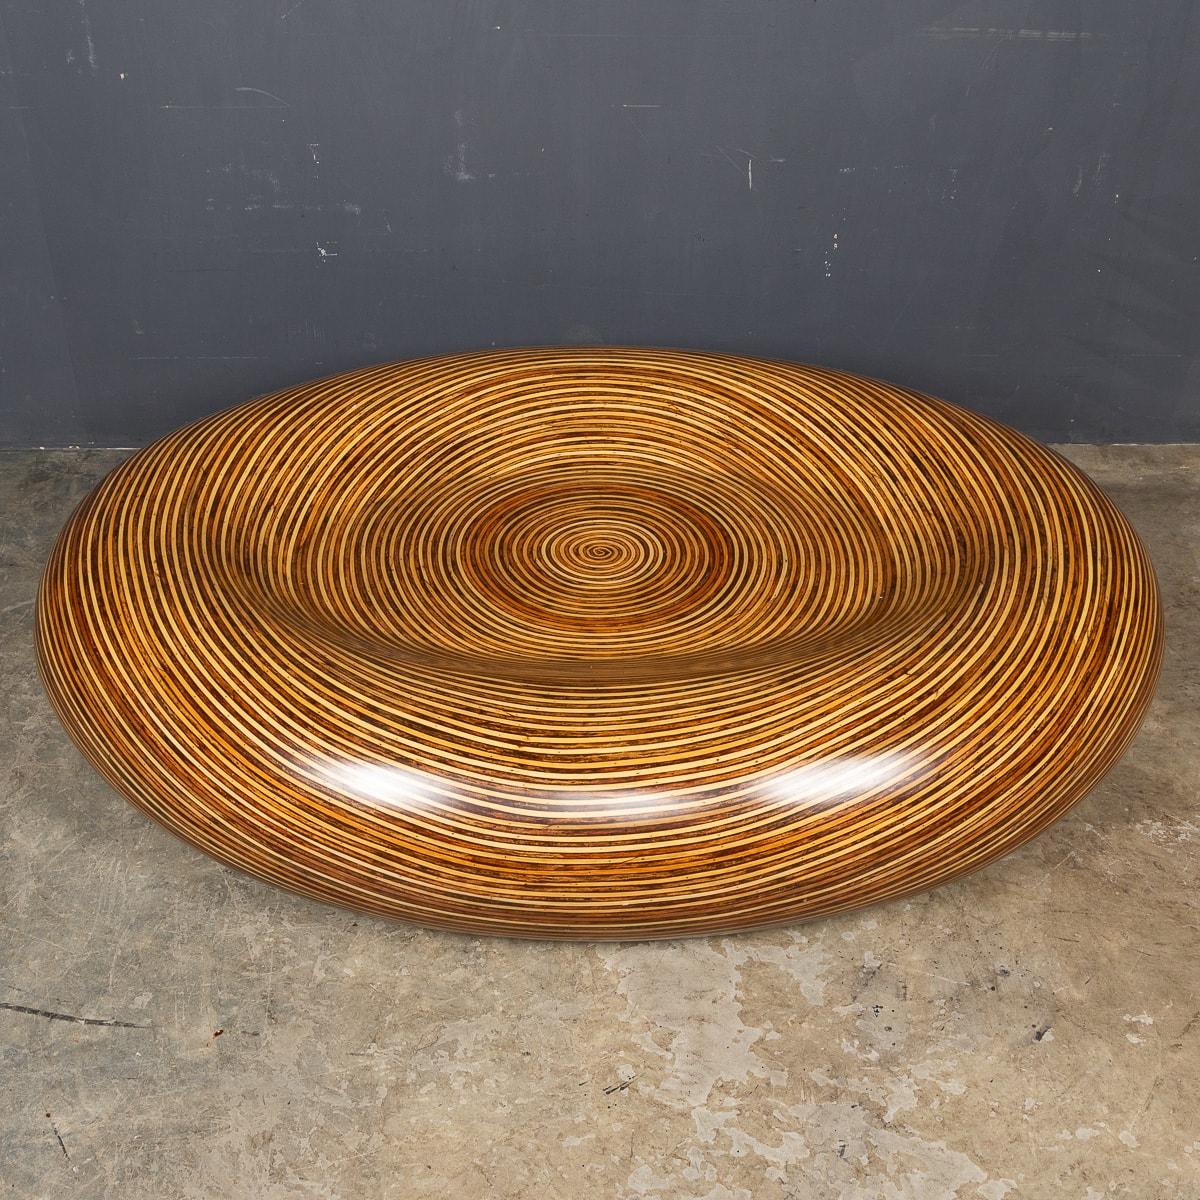 Superbe table en fibre de verre du XXe siècle, moulée de manière transparente dans une forme ronde captivante, avec un motif à effet de bois en couches qui s'étend sur toute sa surface. Cette table aux dimensions généreuses présente des bords